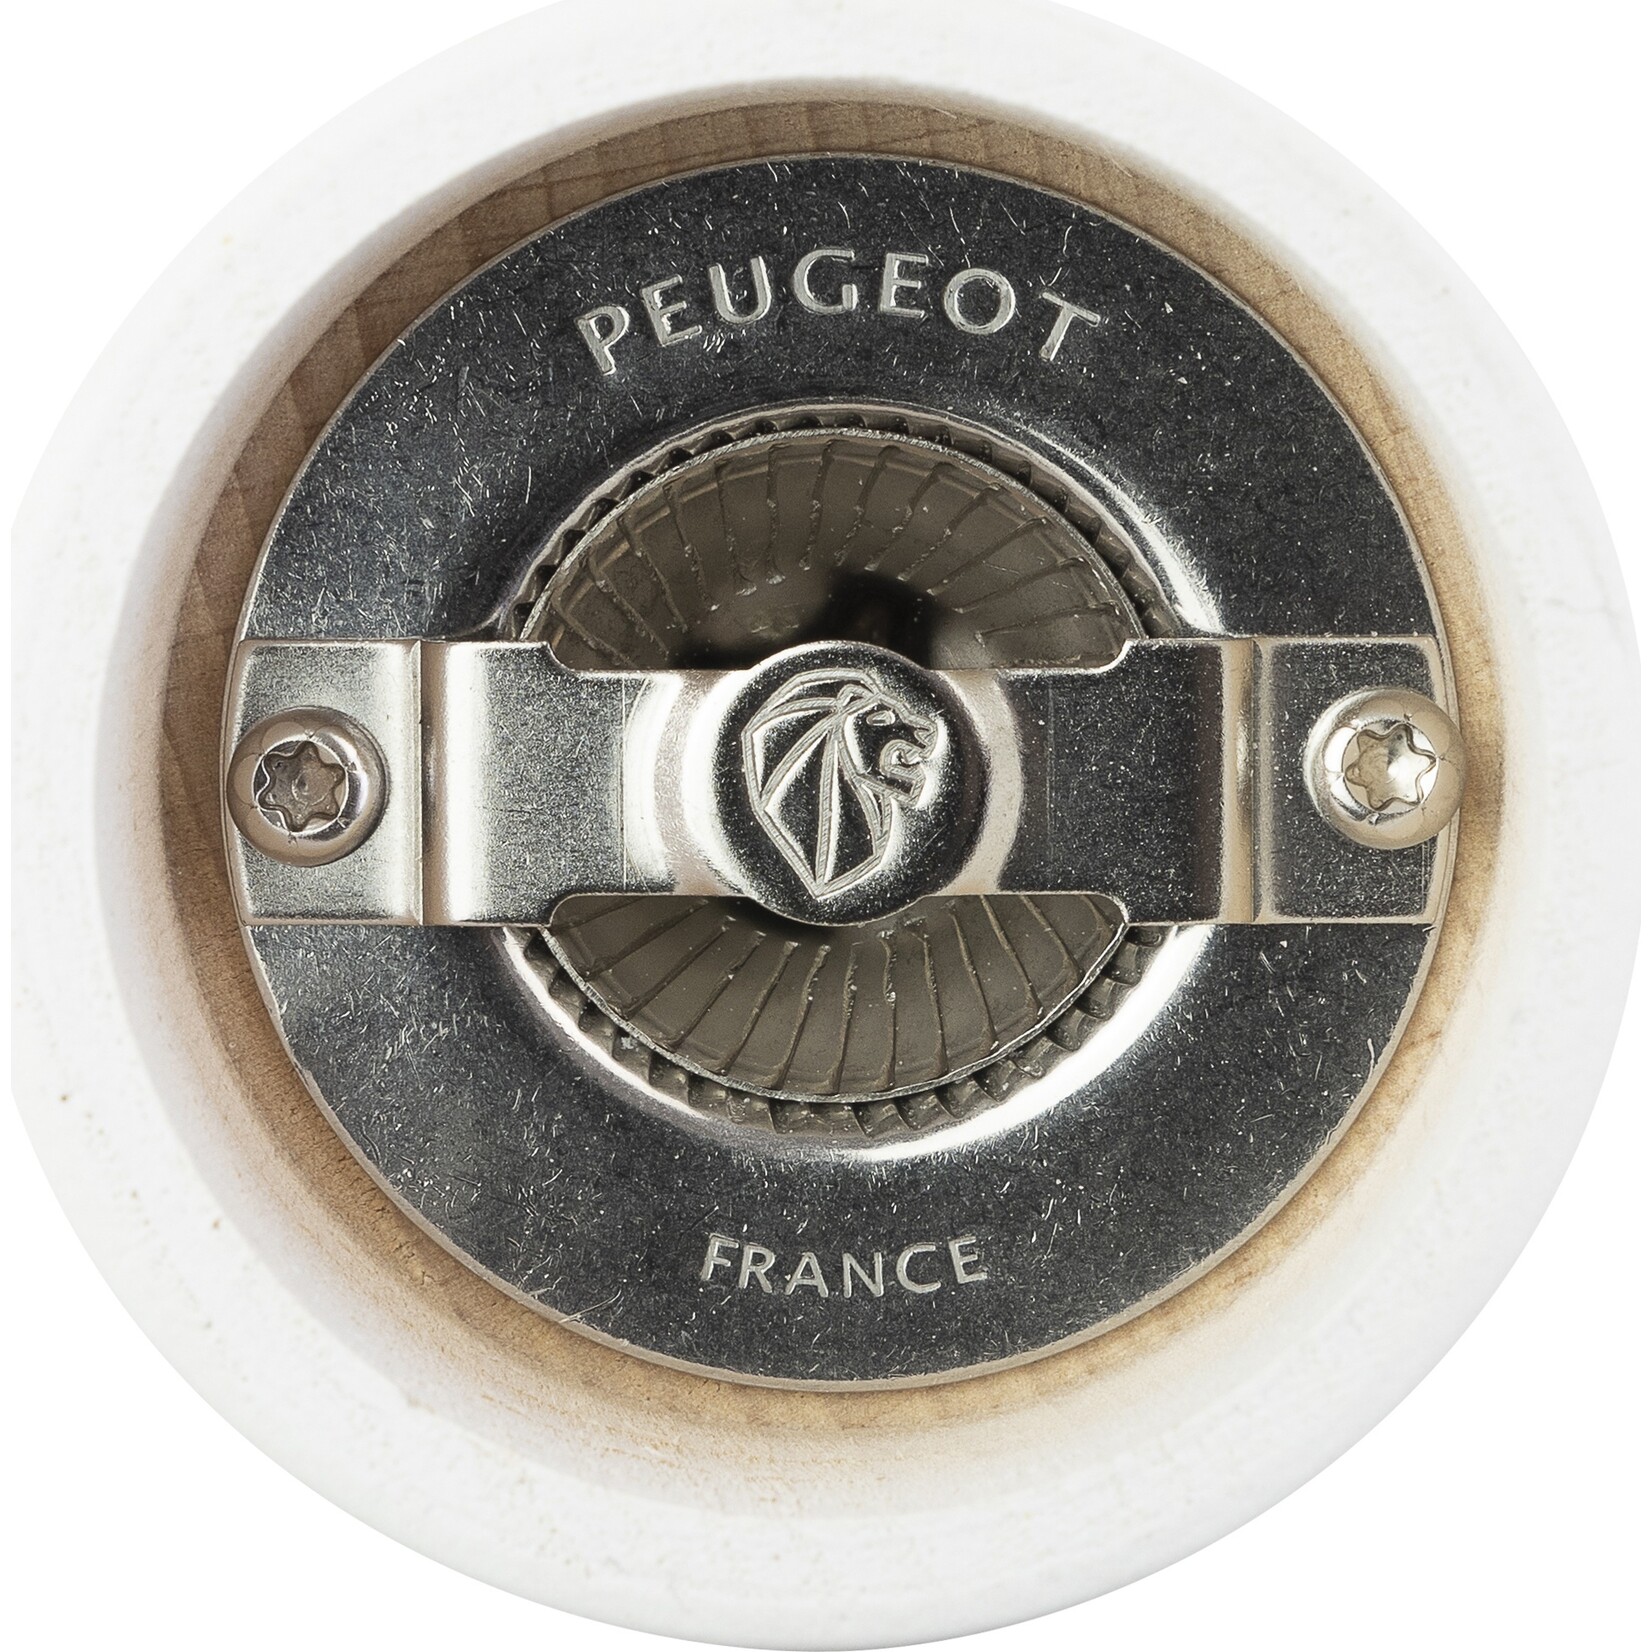 Peugeot Peugeot Tahiti peper- en zoutmolen 15 cm, mat zwart & mat wit, duo